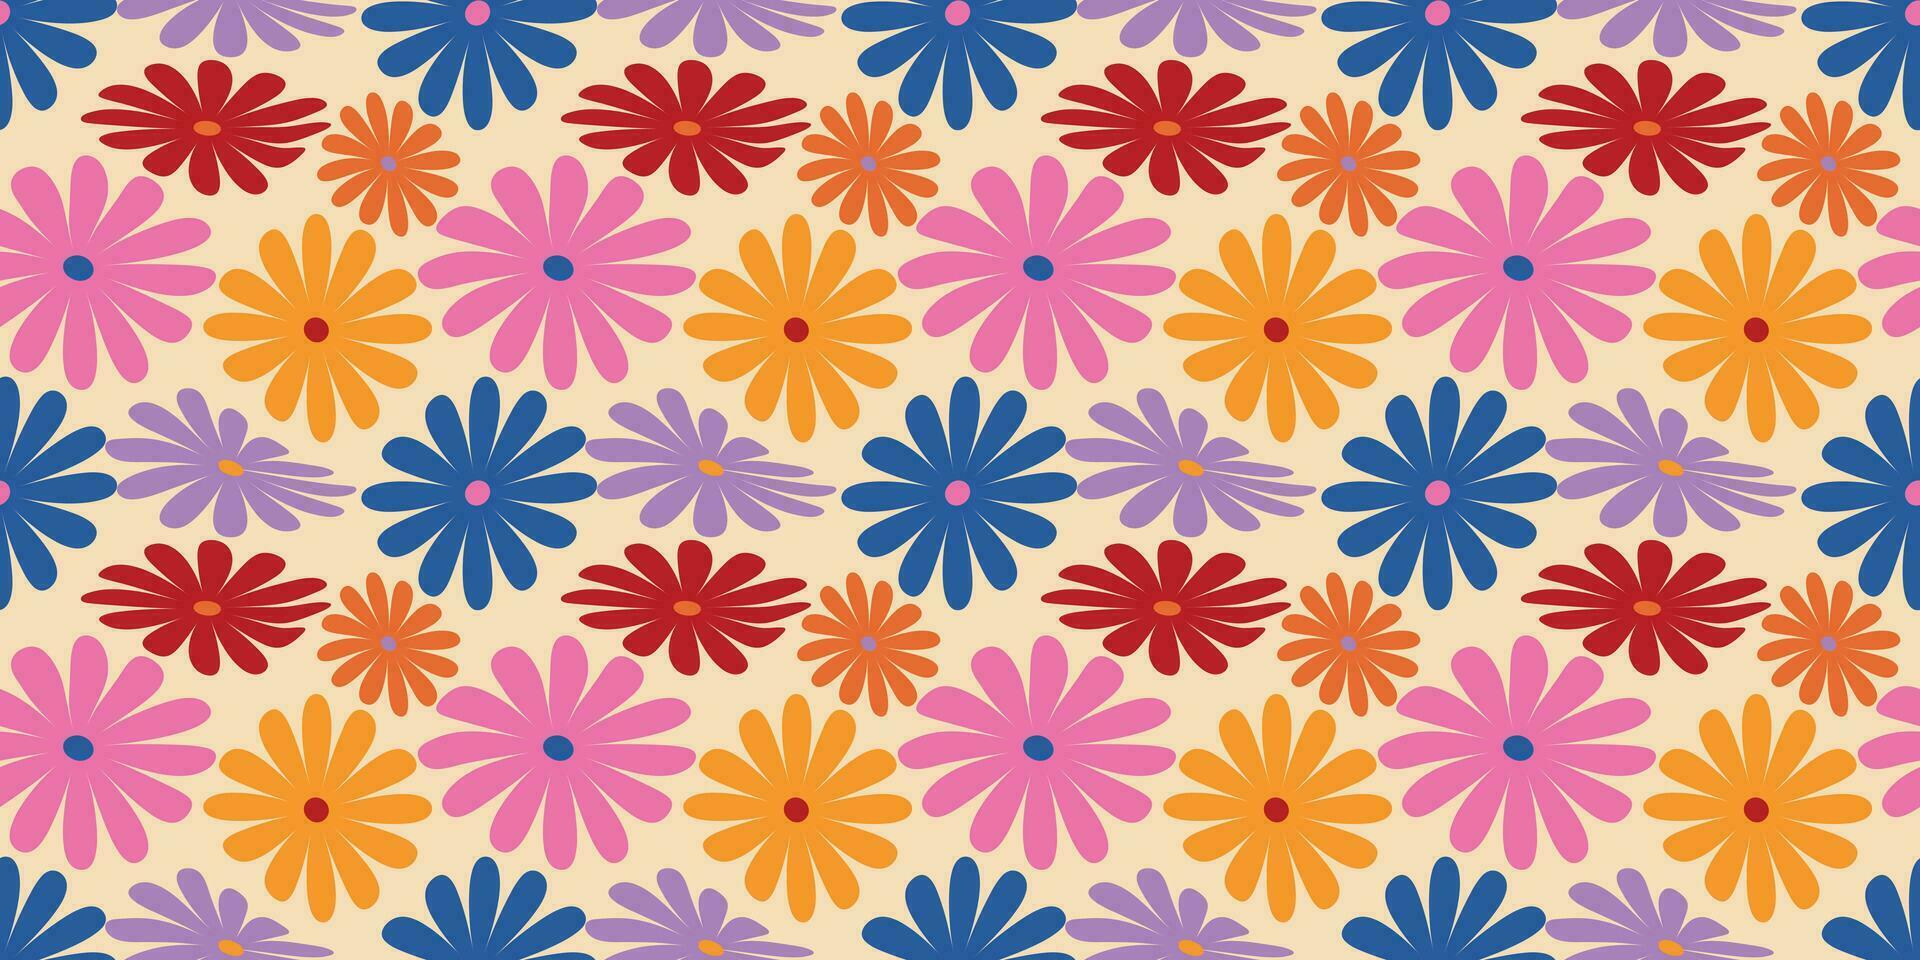 groovig Gänseblümchen Blumen nahtlos Muster. Blumen- Vektor Hintergrund im 1970er Jahre Hippie retro Stil zum drucken auf Textil, Verpackung Papier, Netz Design und Sozial Medien